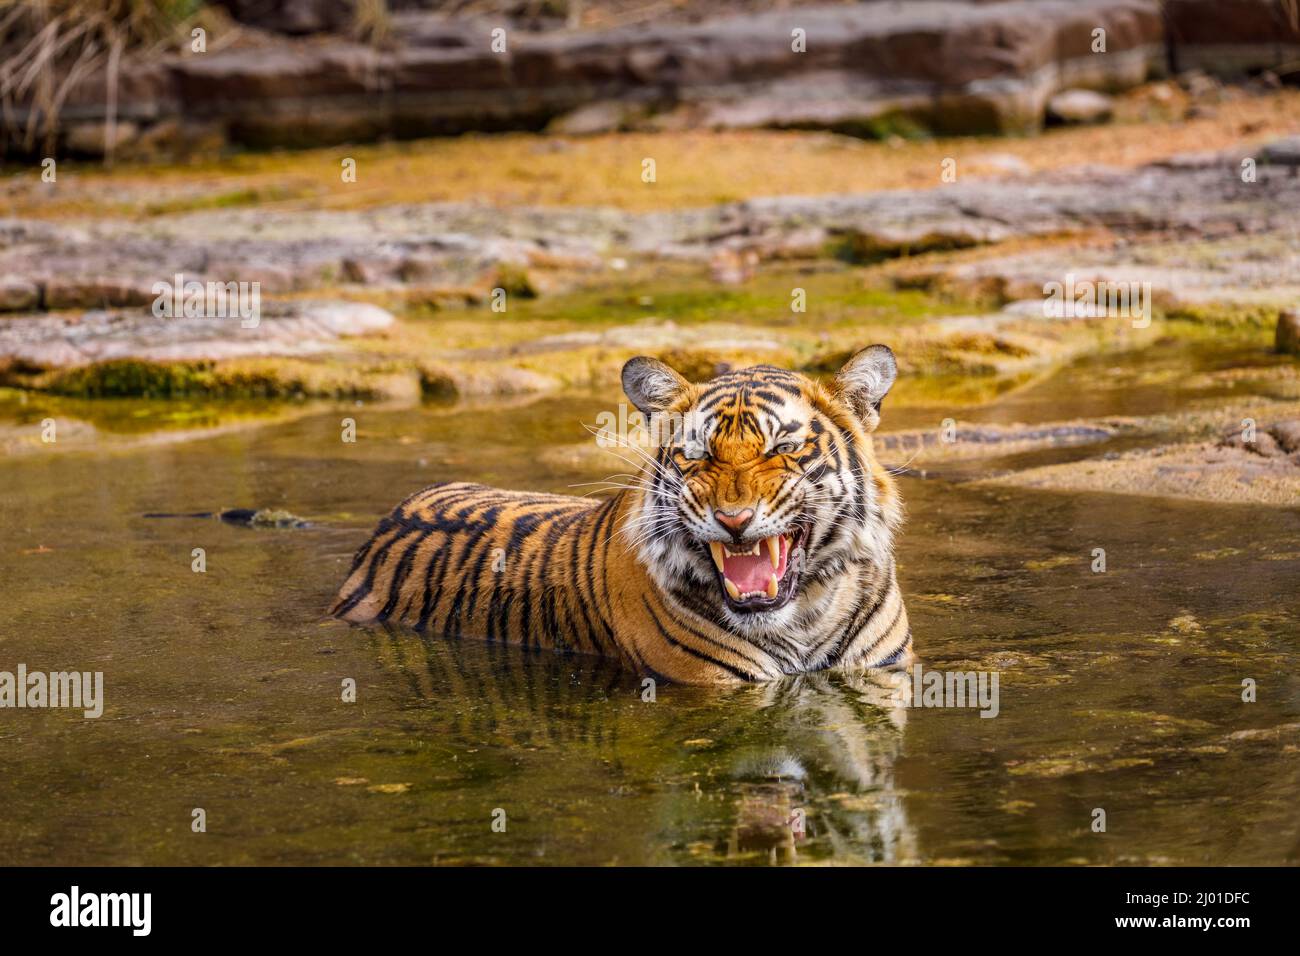 Weibliche Bengaltiger (Panthera tigris) (Tigerin) schnarrt, während sie sich ausruht und in einem Wasserloch, dem Ranthambore National Park, Rajasthan, Nordindien, abkühlt Stockfoto